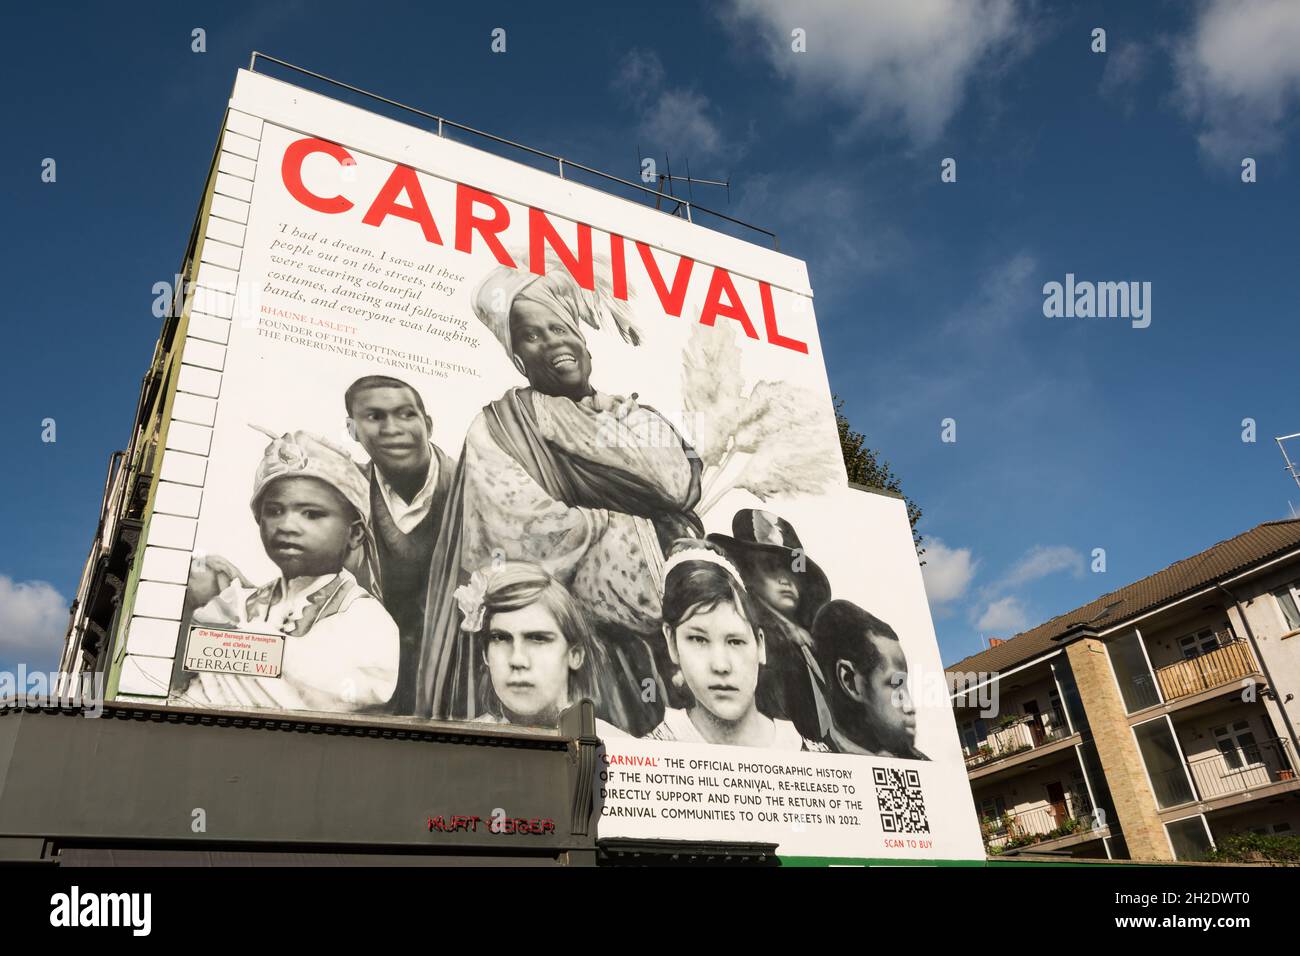 Charlie Phillips Carnival Street art sur Colville Terrace à côté de Portobello Road, Notting Hill, Londres, W11, Angleterre, ROYAUME-UNI Banque D'Images